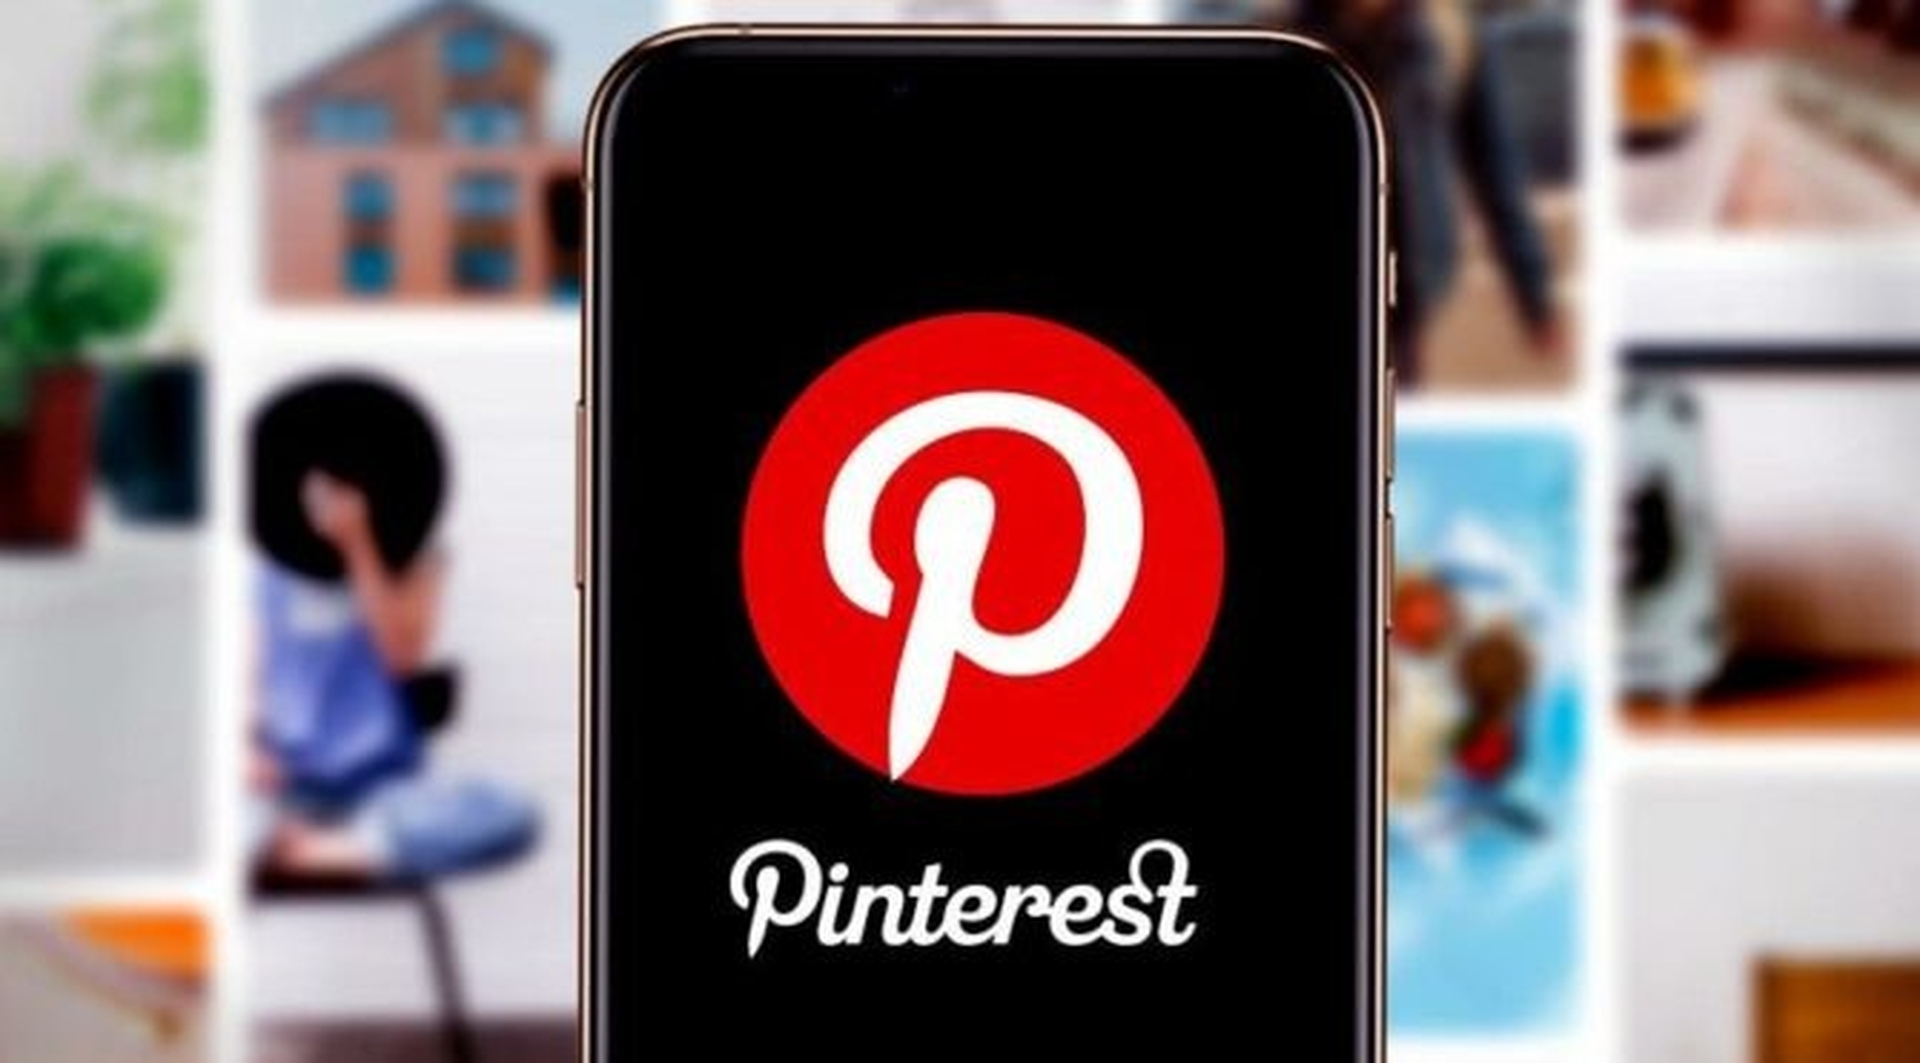 Dans cet article, nous allons expliquer comment se classer sur Pinterest en 2022, afin que vos épingles puissent devenir plus attrayantes et que vous puissiez accroître votre présence sur la plateforme.